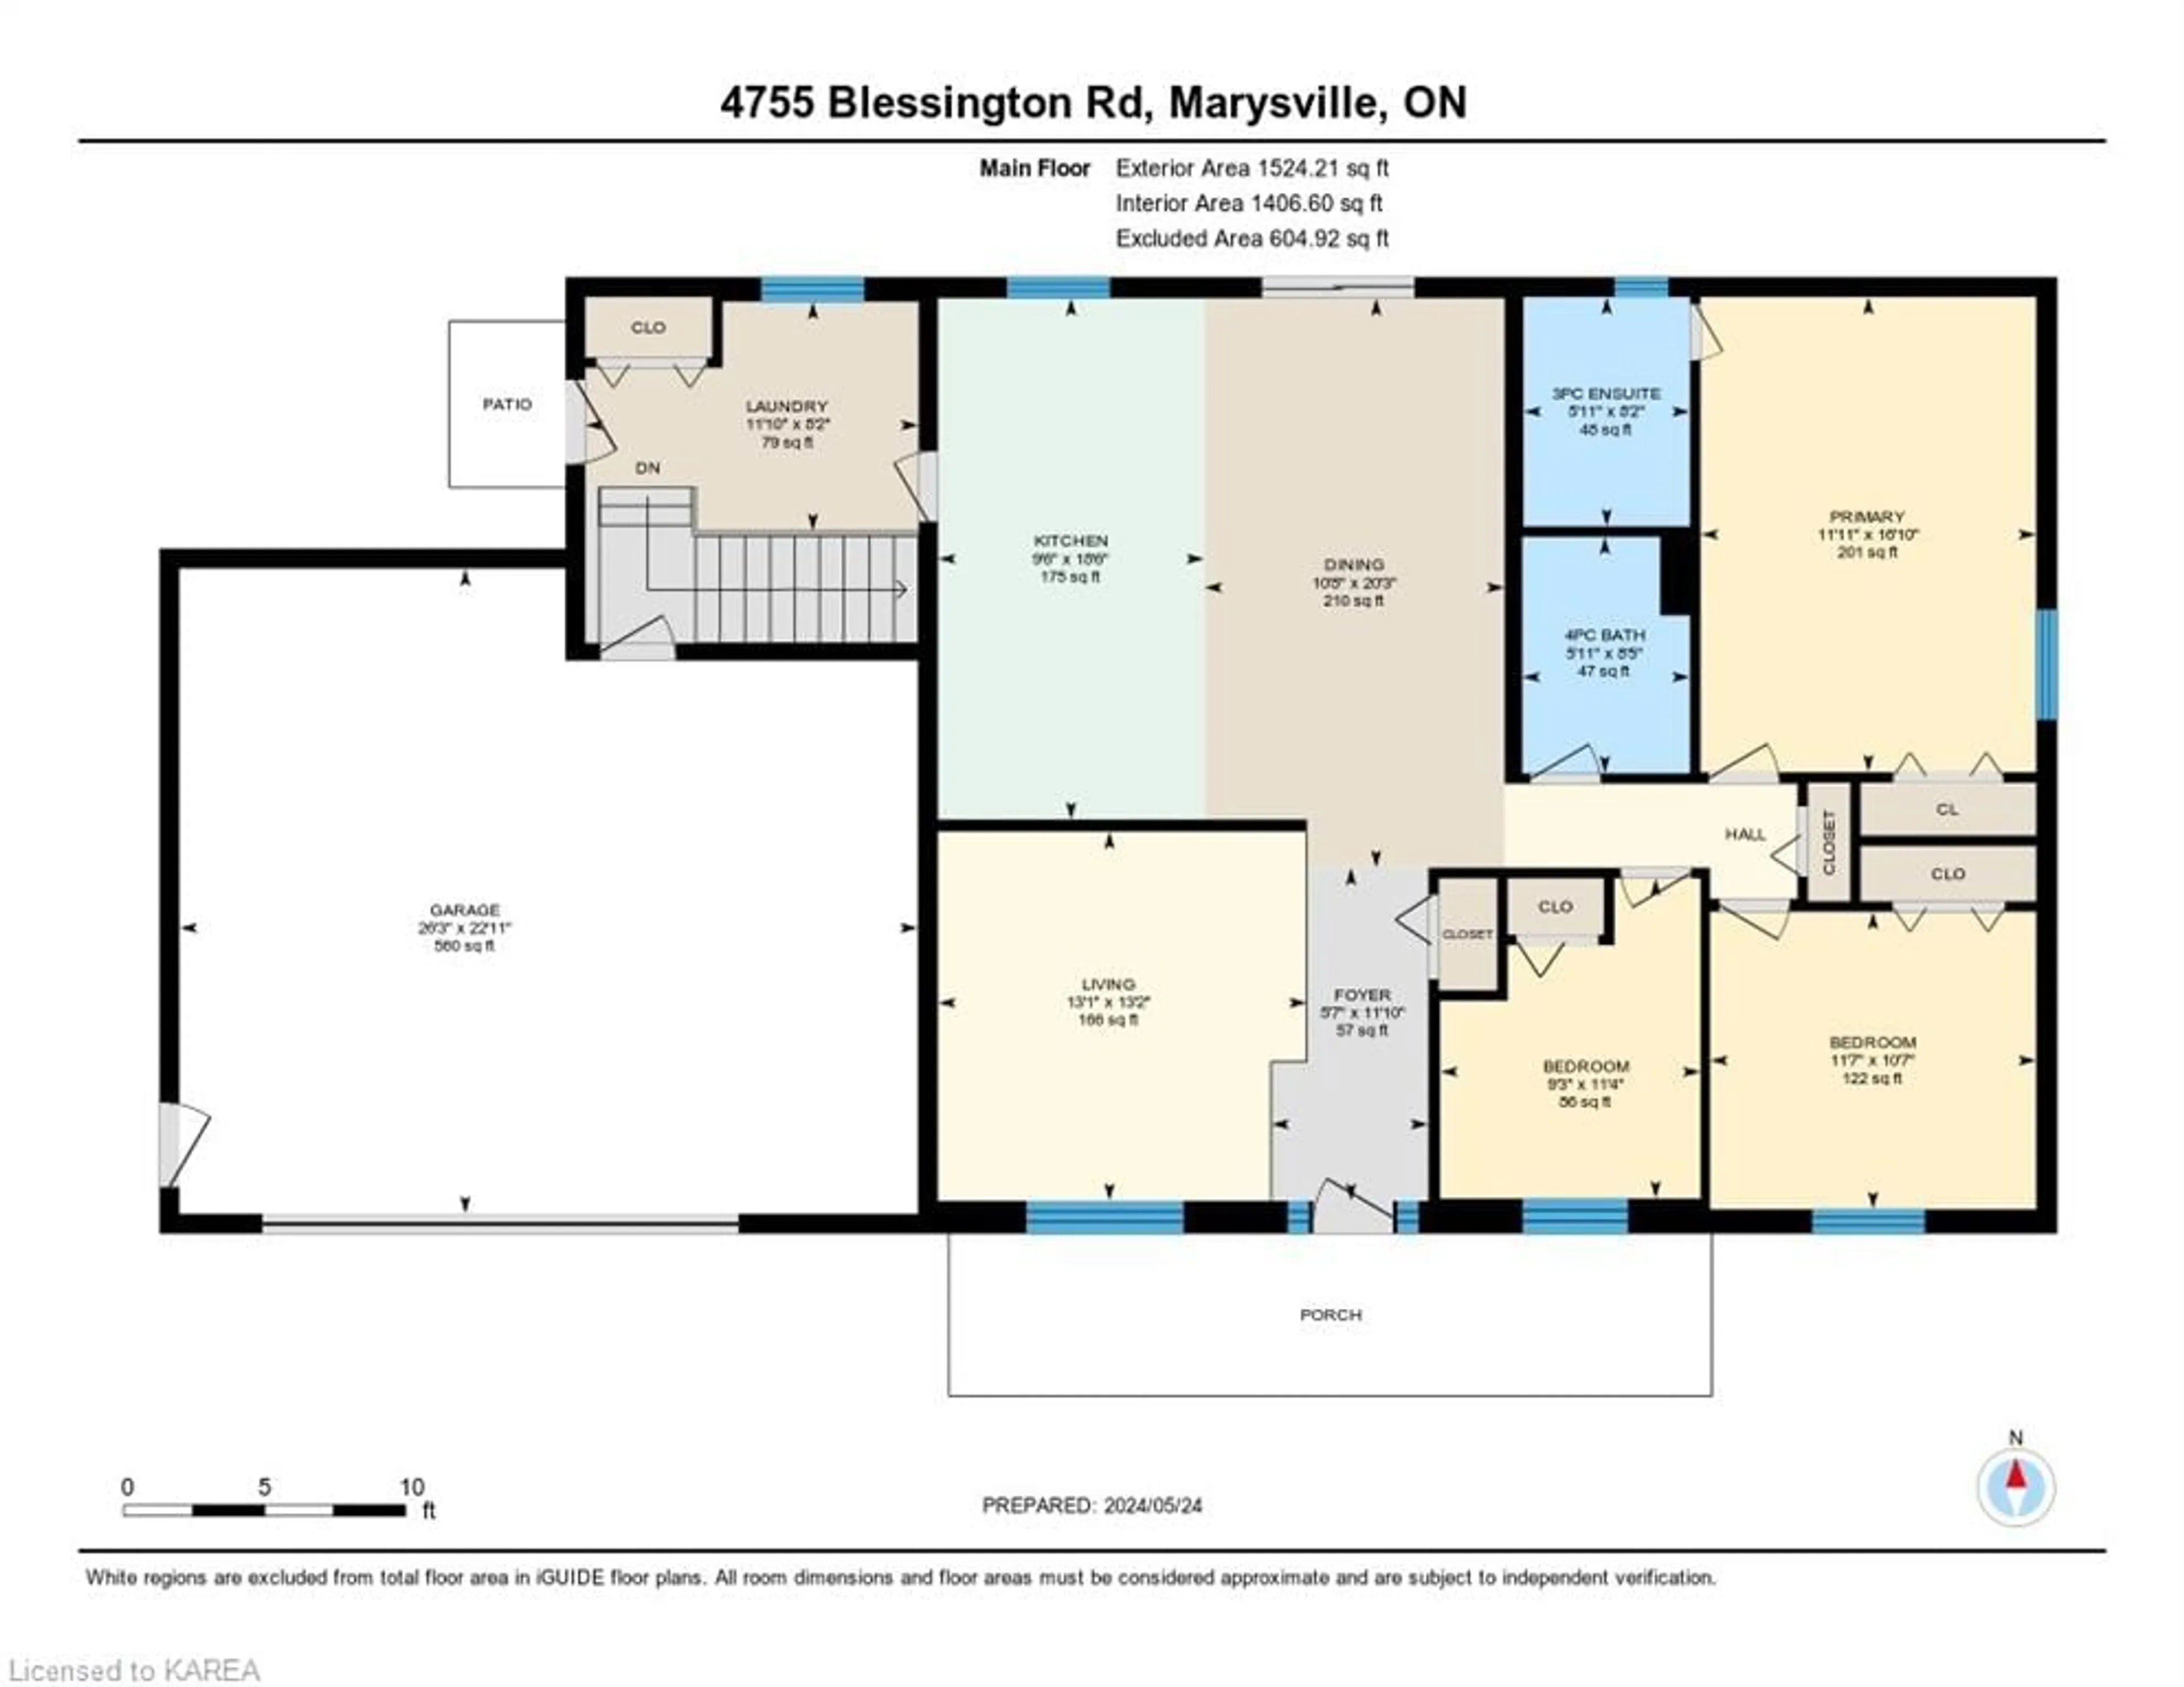 Floor plan for 4755 Blessington Rd, Marysville Ontario K0K 2N0